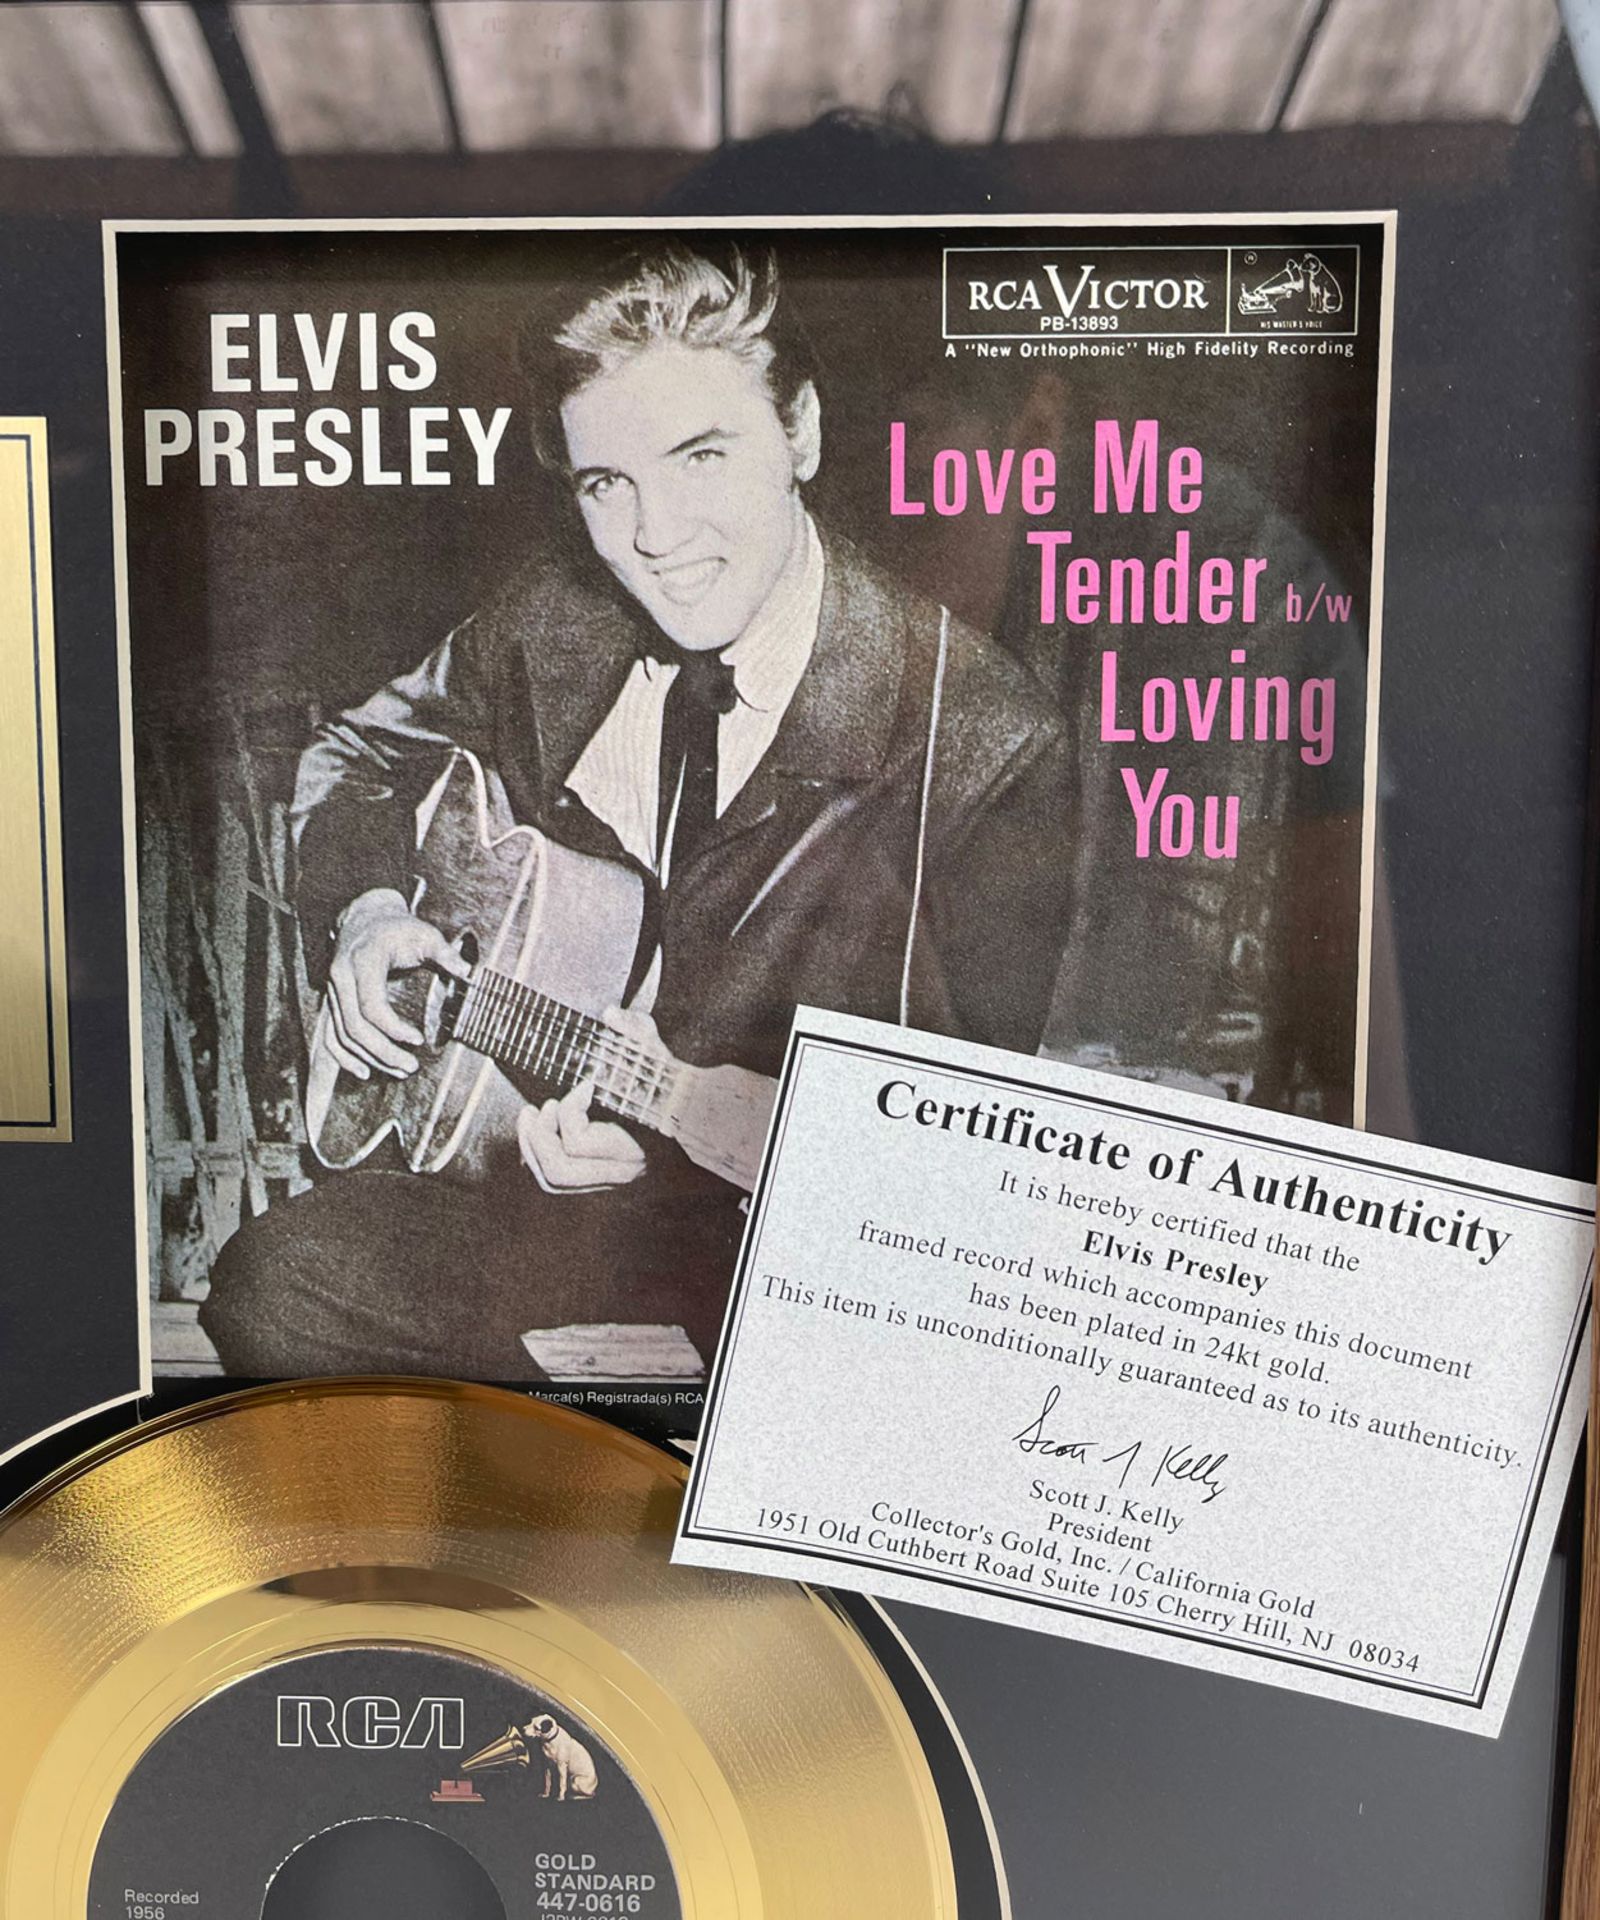 Elvis Presley Framed Golden Record "Love Me Tender" - Image 2 of 7